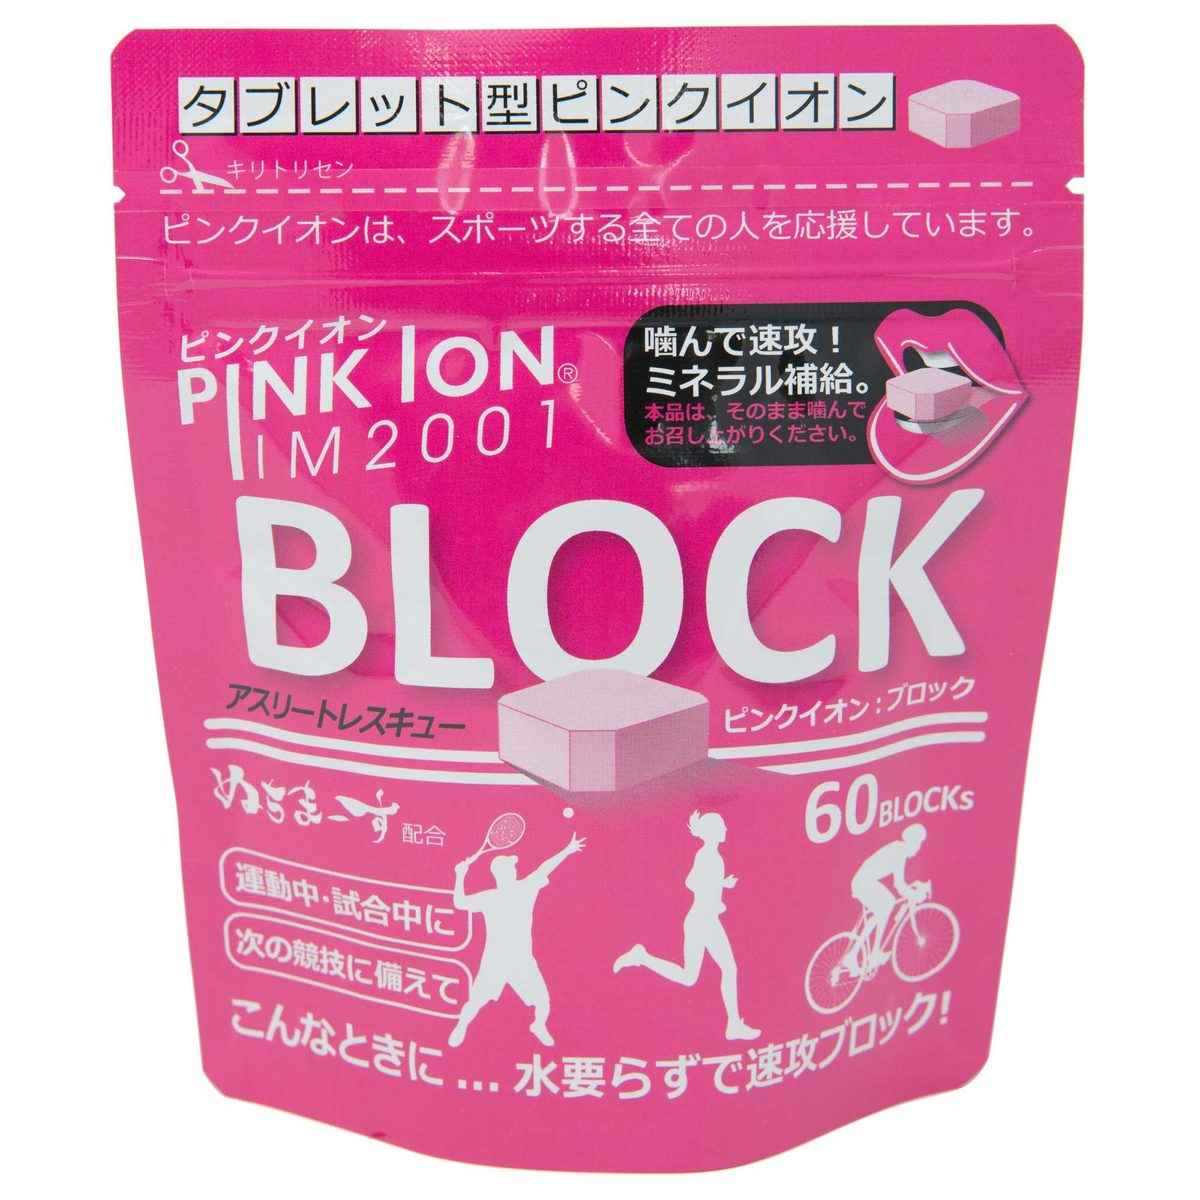 PINKION JAPAN PINKION 1302 ミネラル・アミノ酸補給食品 固形 PINKION ブロック60 アルミ袋タイプ